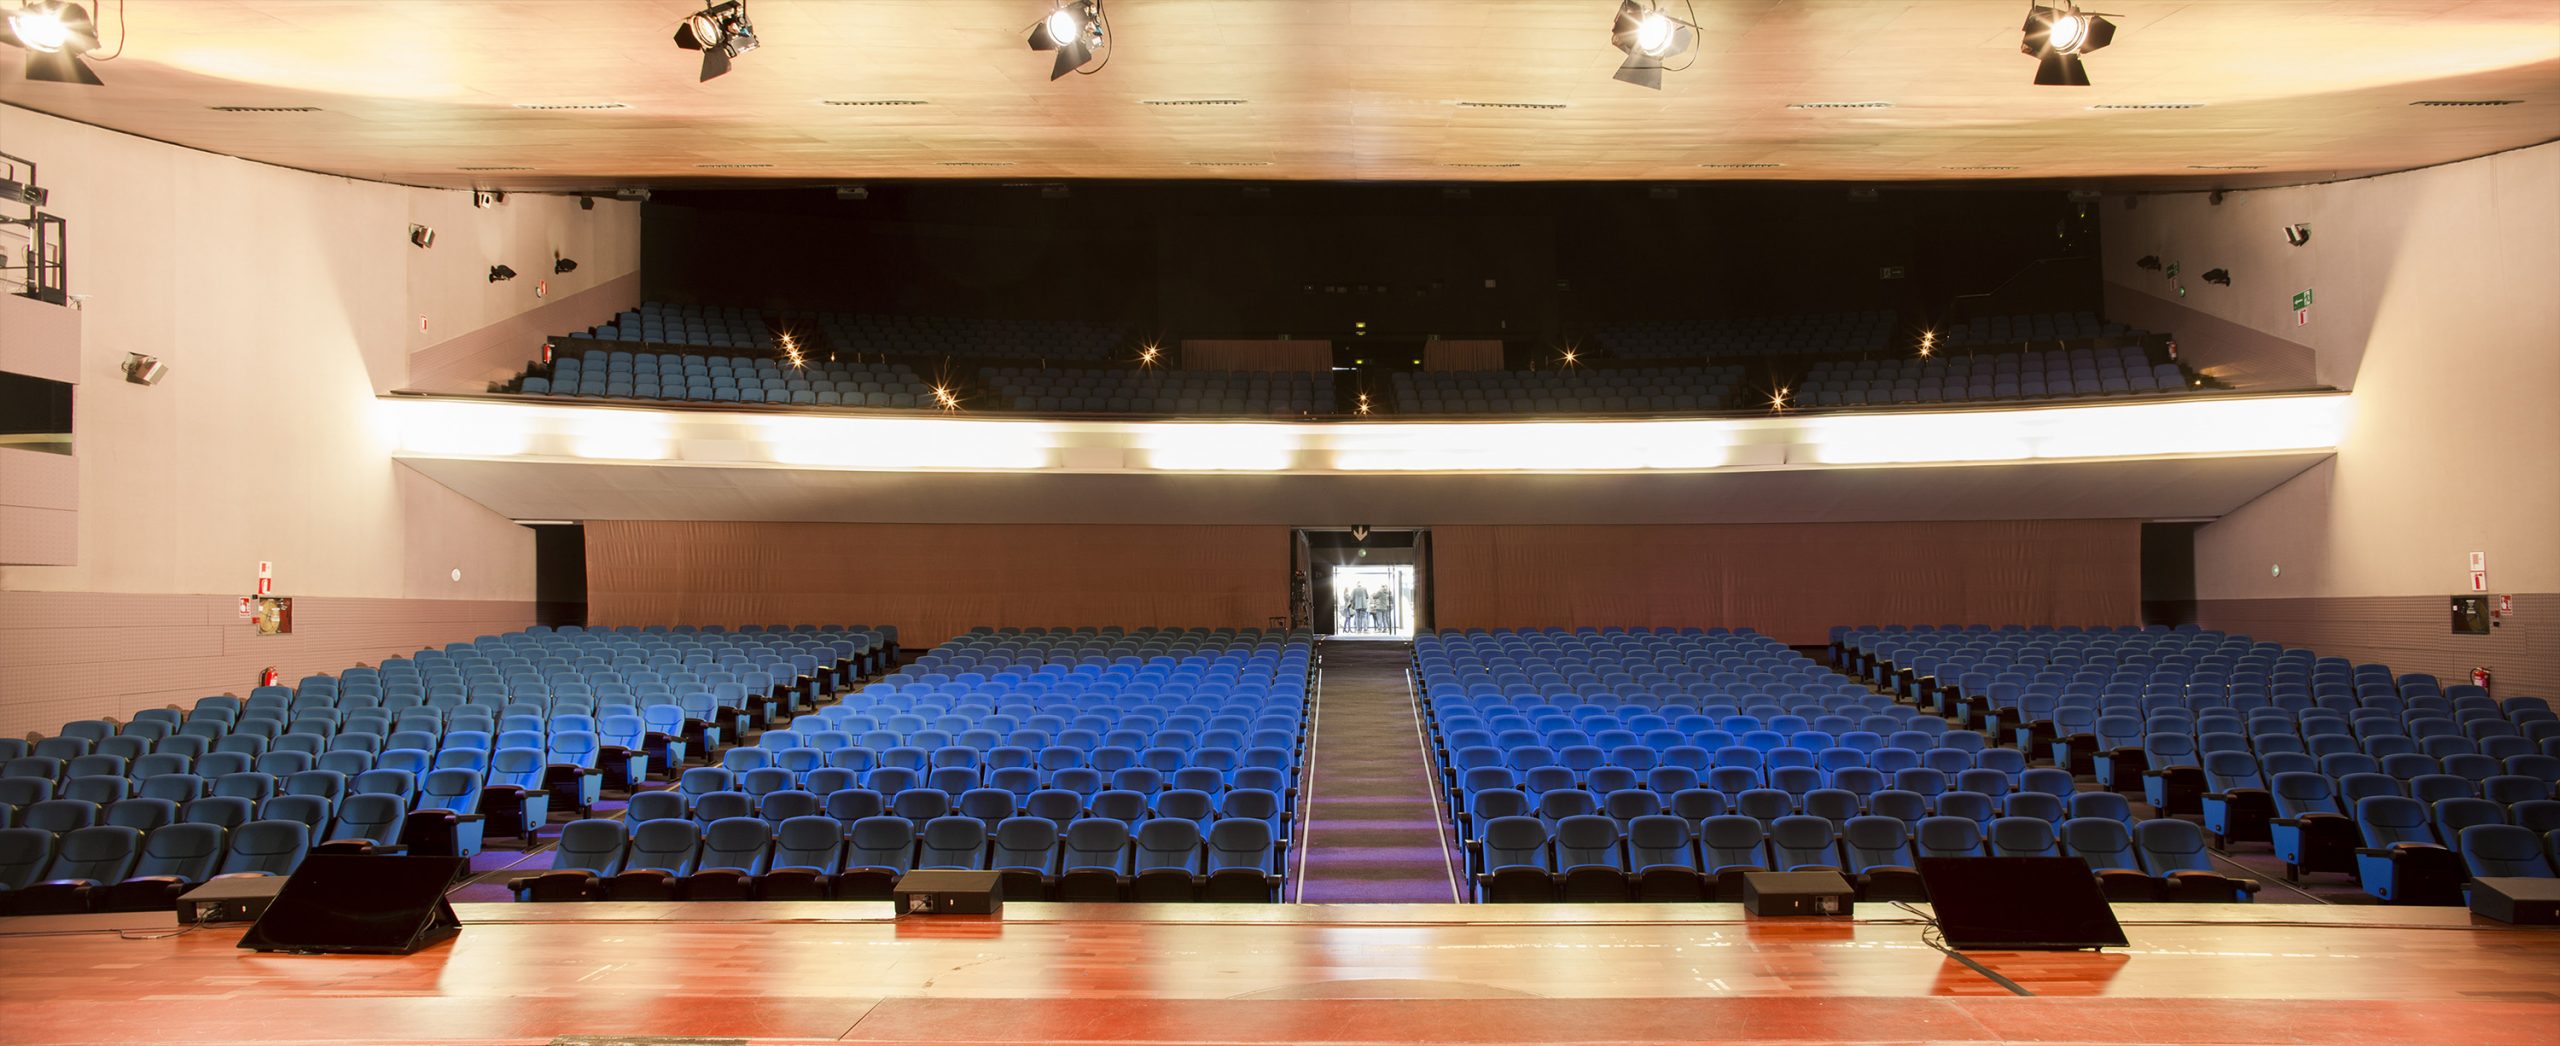 Auditorium PCB